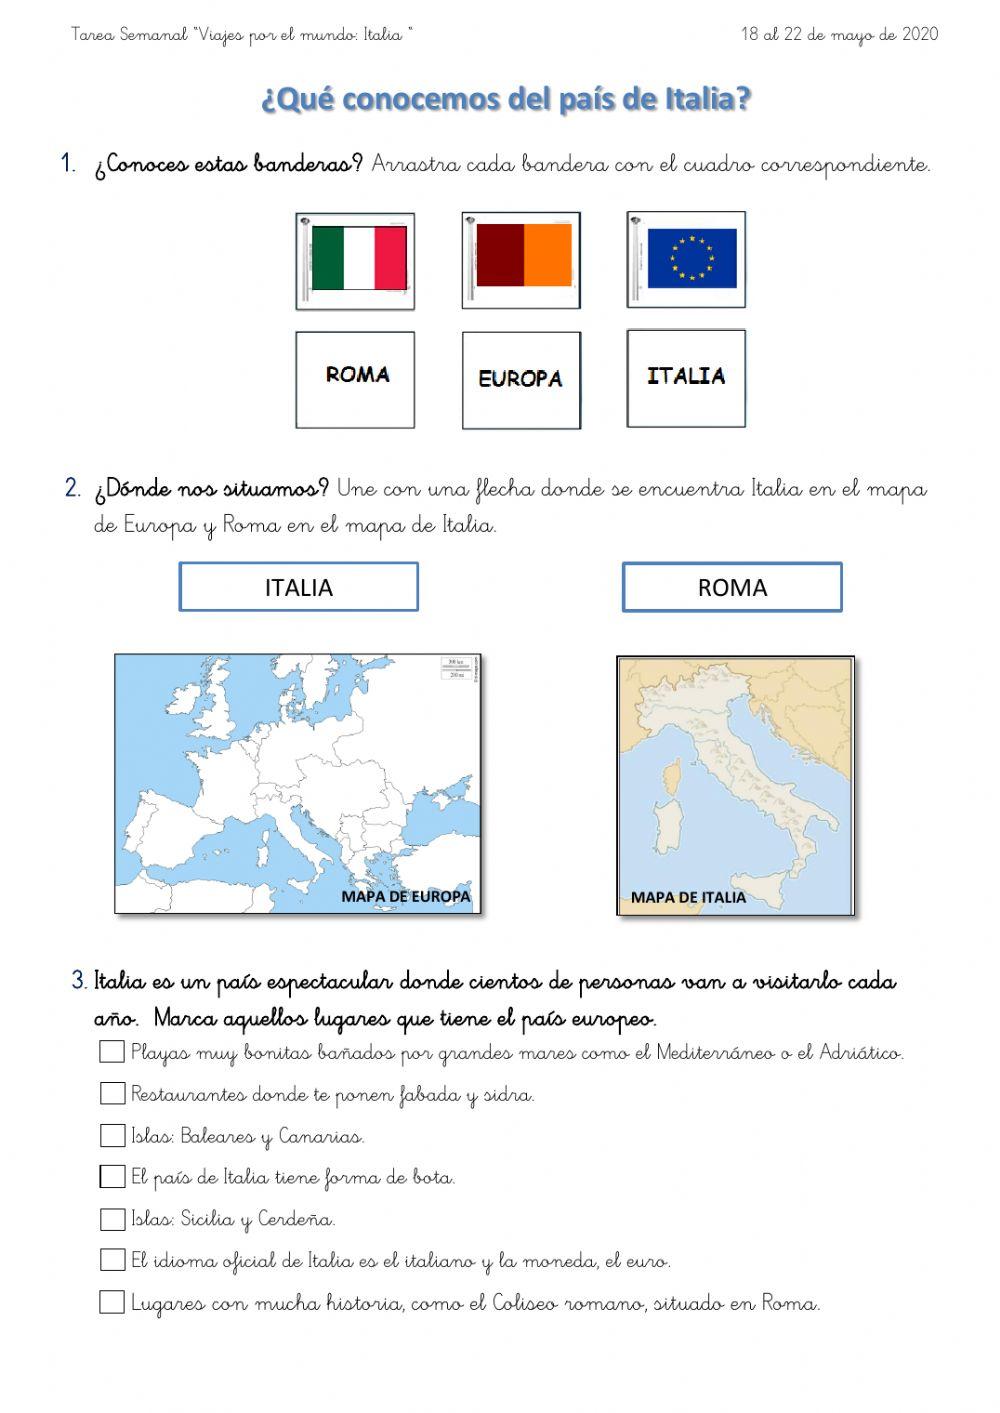 ¿Qué conocemos sobre Italia?